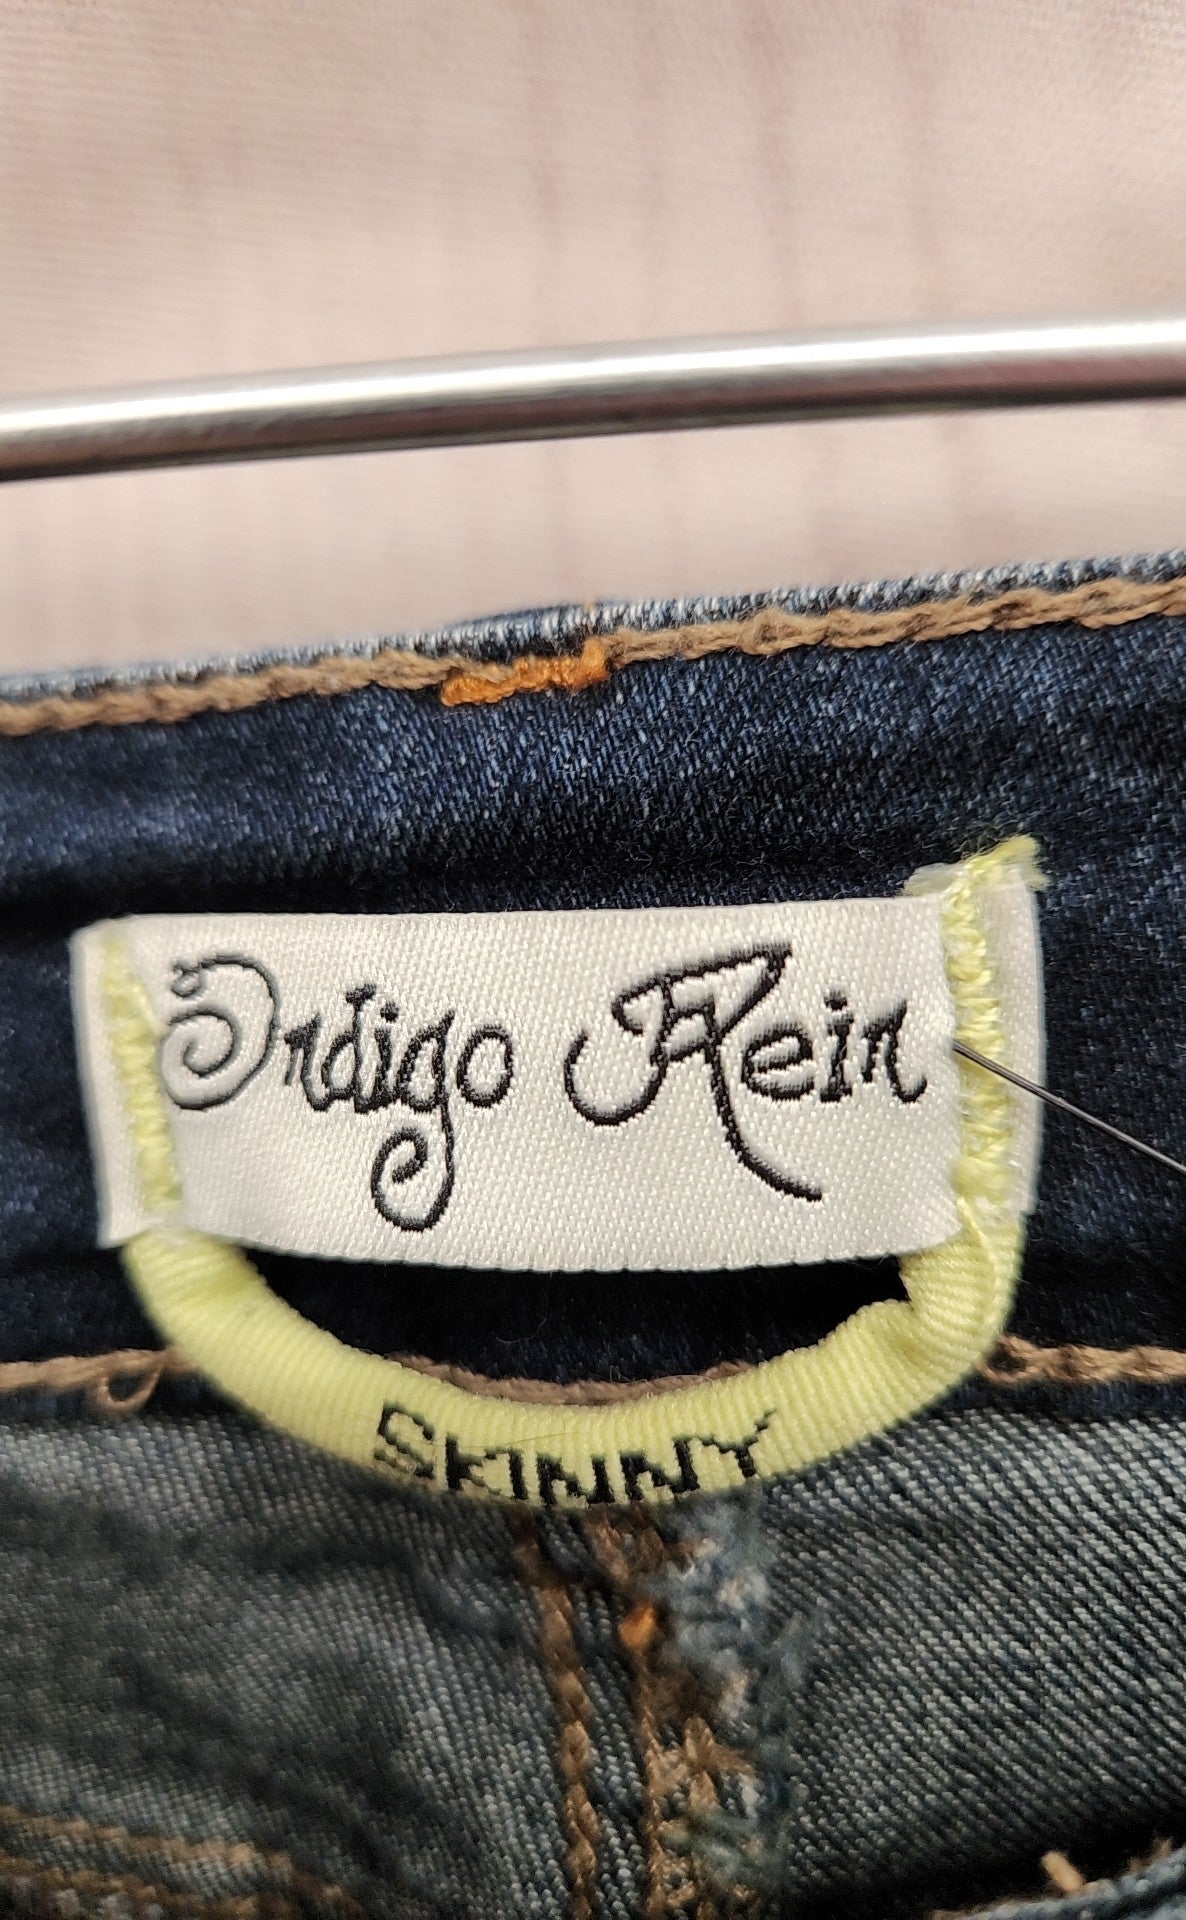 Indigo Rein Women's Size 29 (7-8) Skinny Blue Jeans